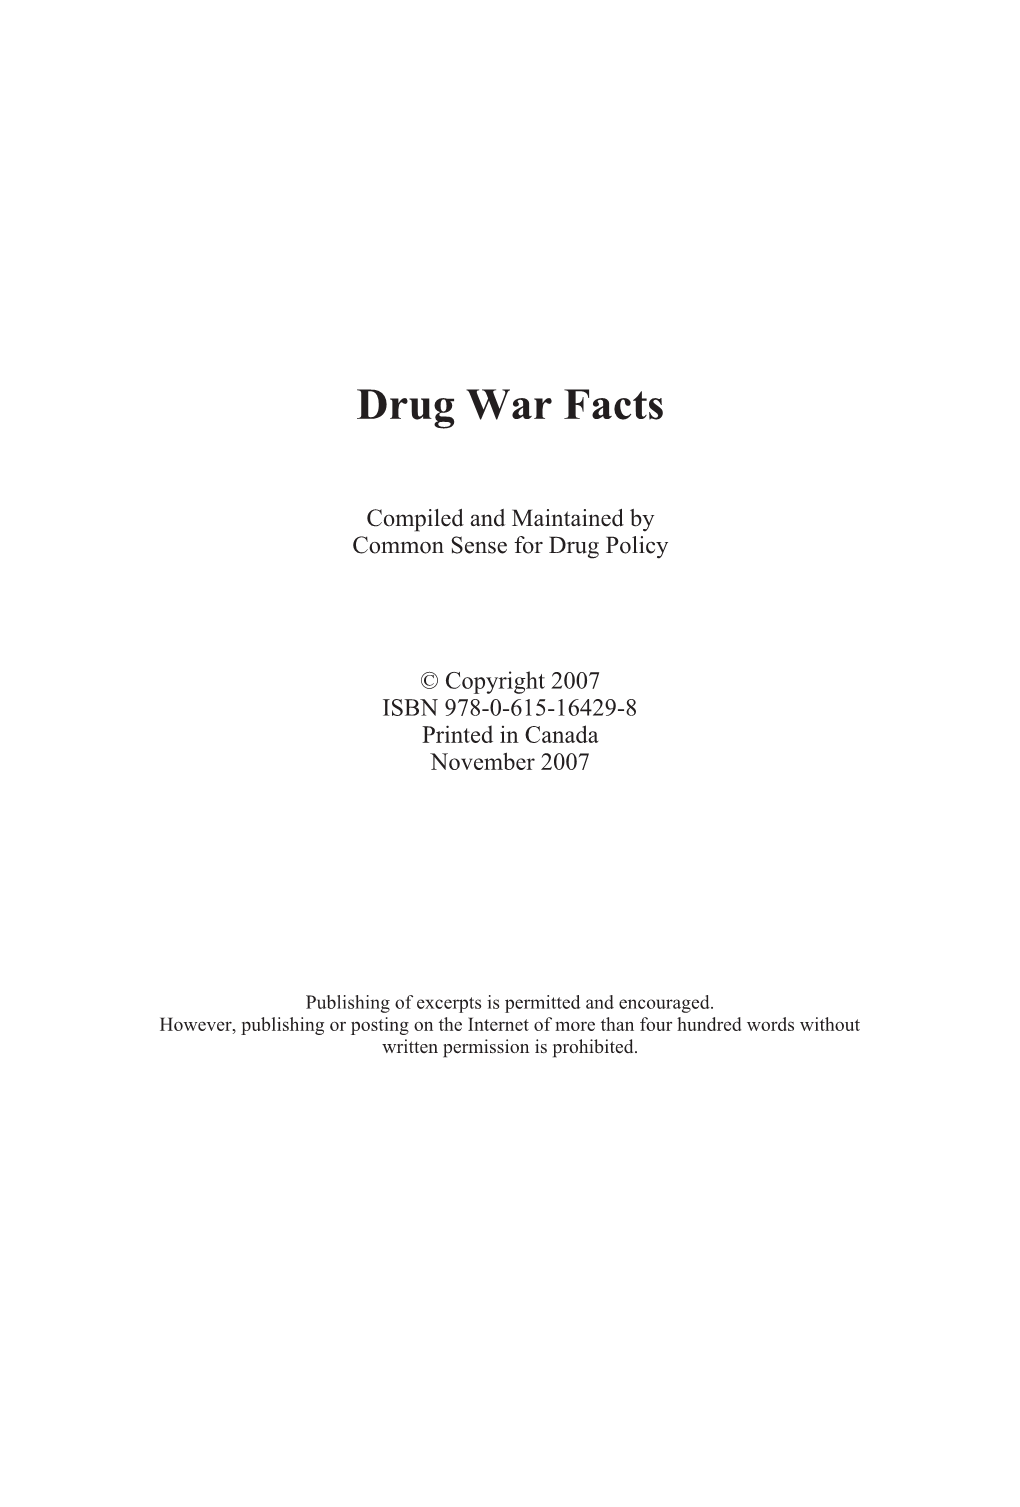 DRUG WAR FACTS 2007.Vp